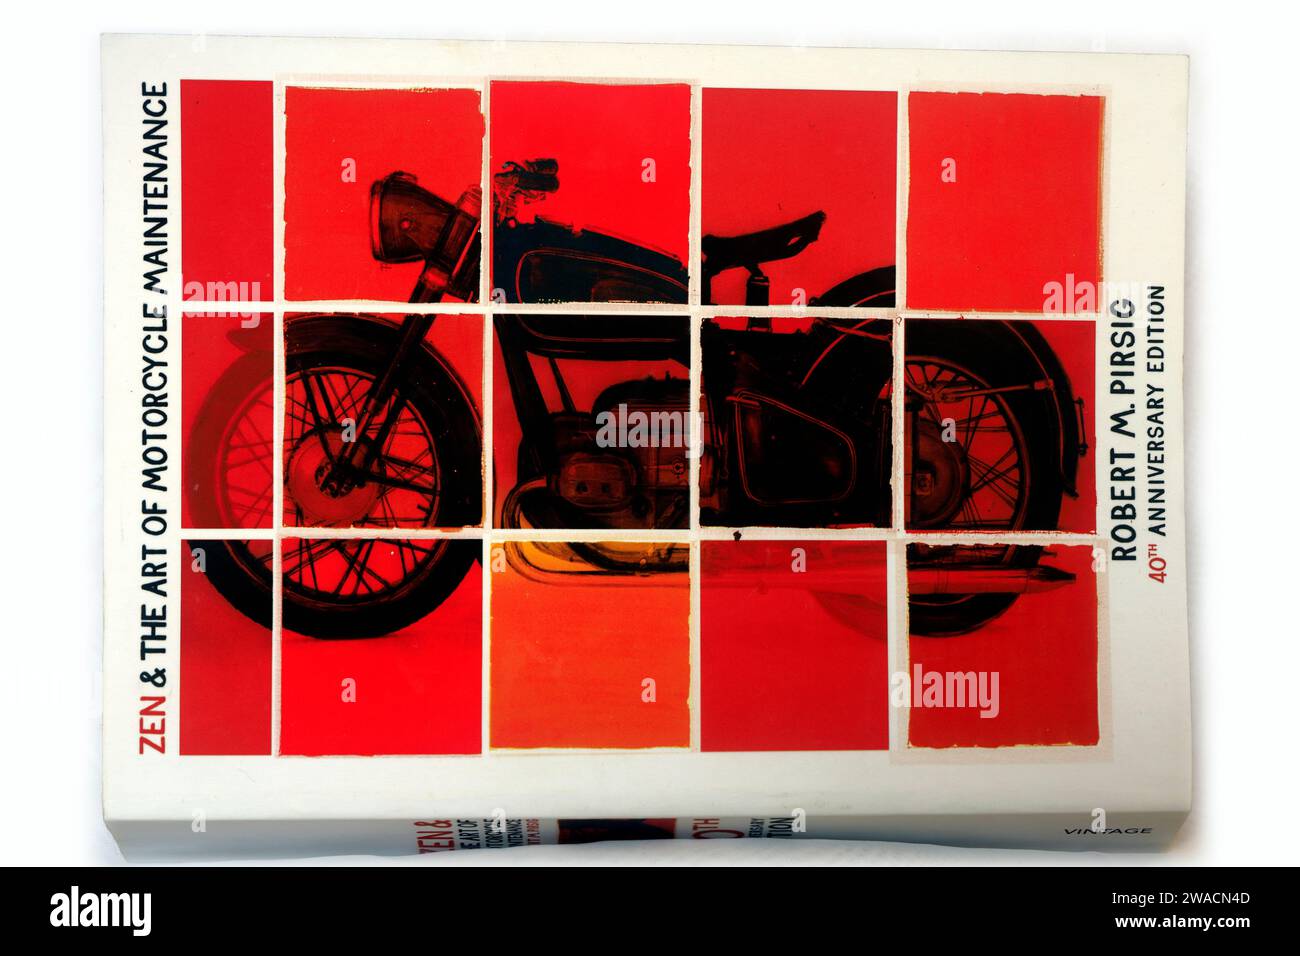 Zen & The Art of Motorcycle Maintenance par Robert M Pirisig, couverture avant du livre de poche édition 40e anniversaire. Configuration du studio. Décembre 2023 Banque D'Images